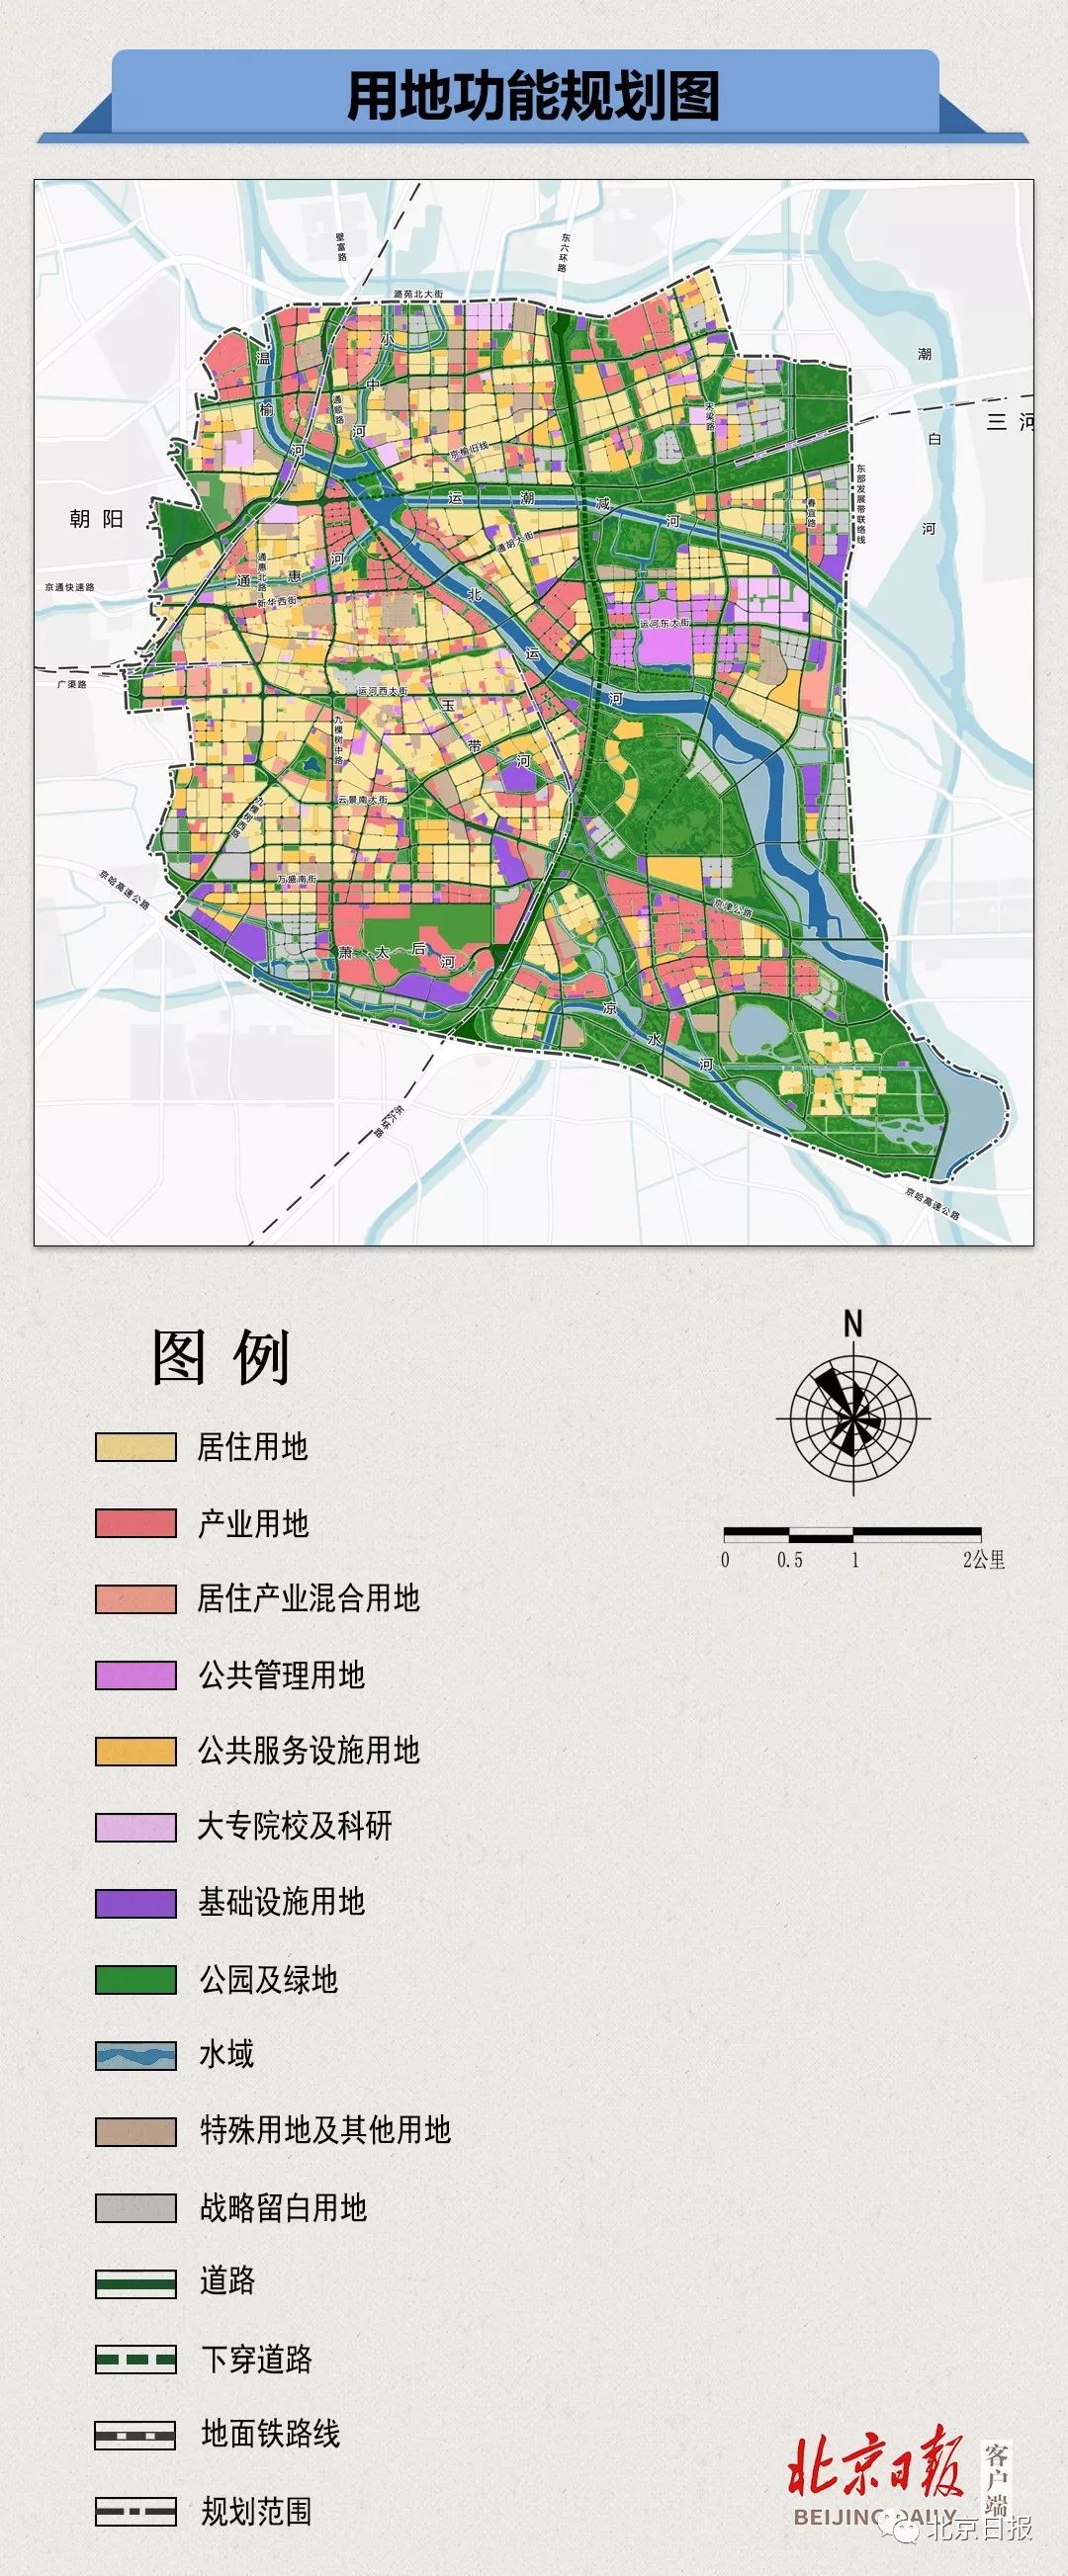 北京城市副中心控制性详细规划揭晓,有关于东坝的吗